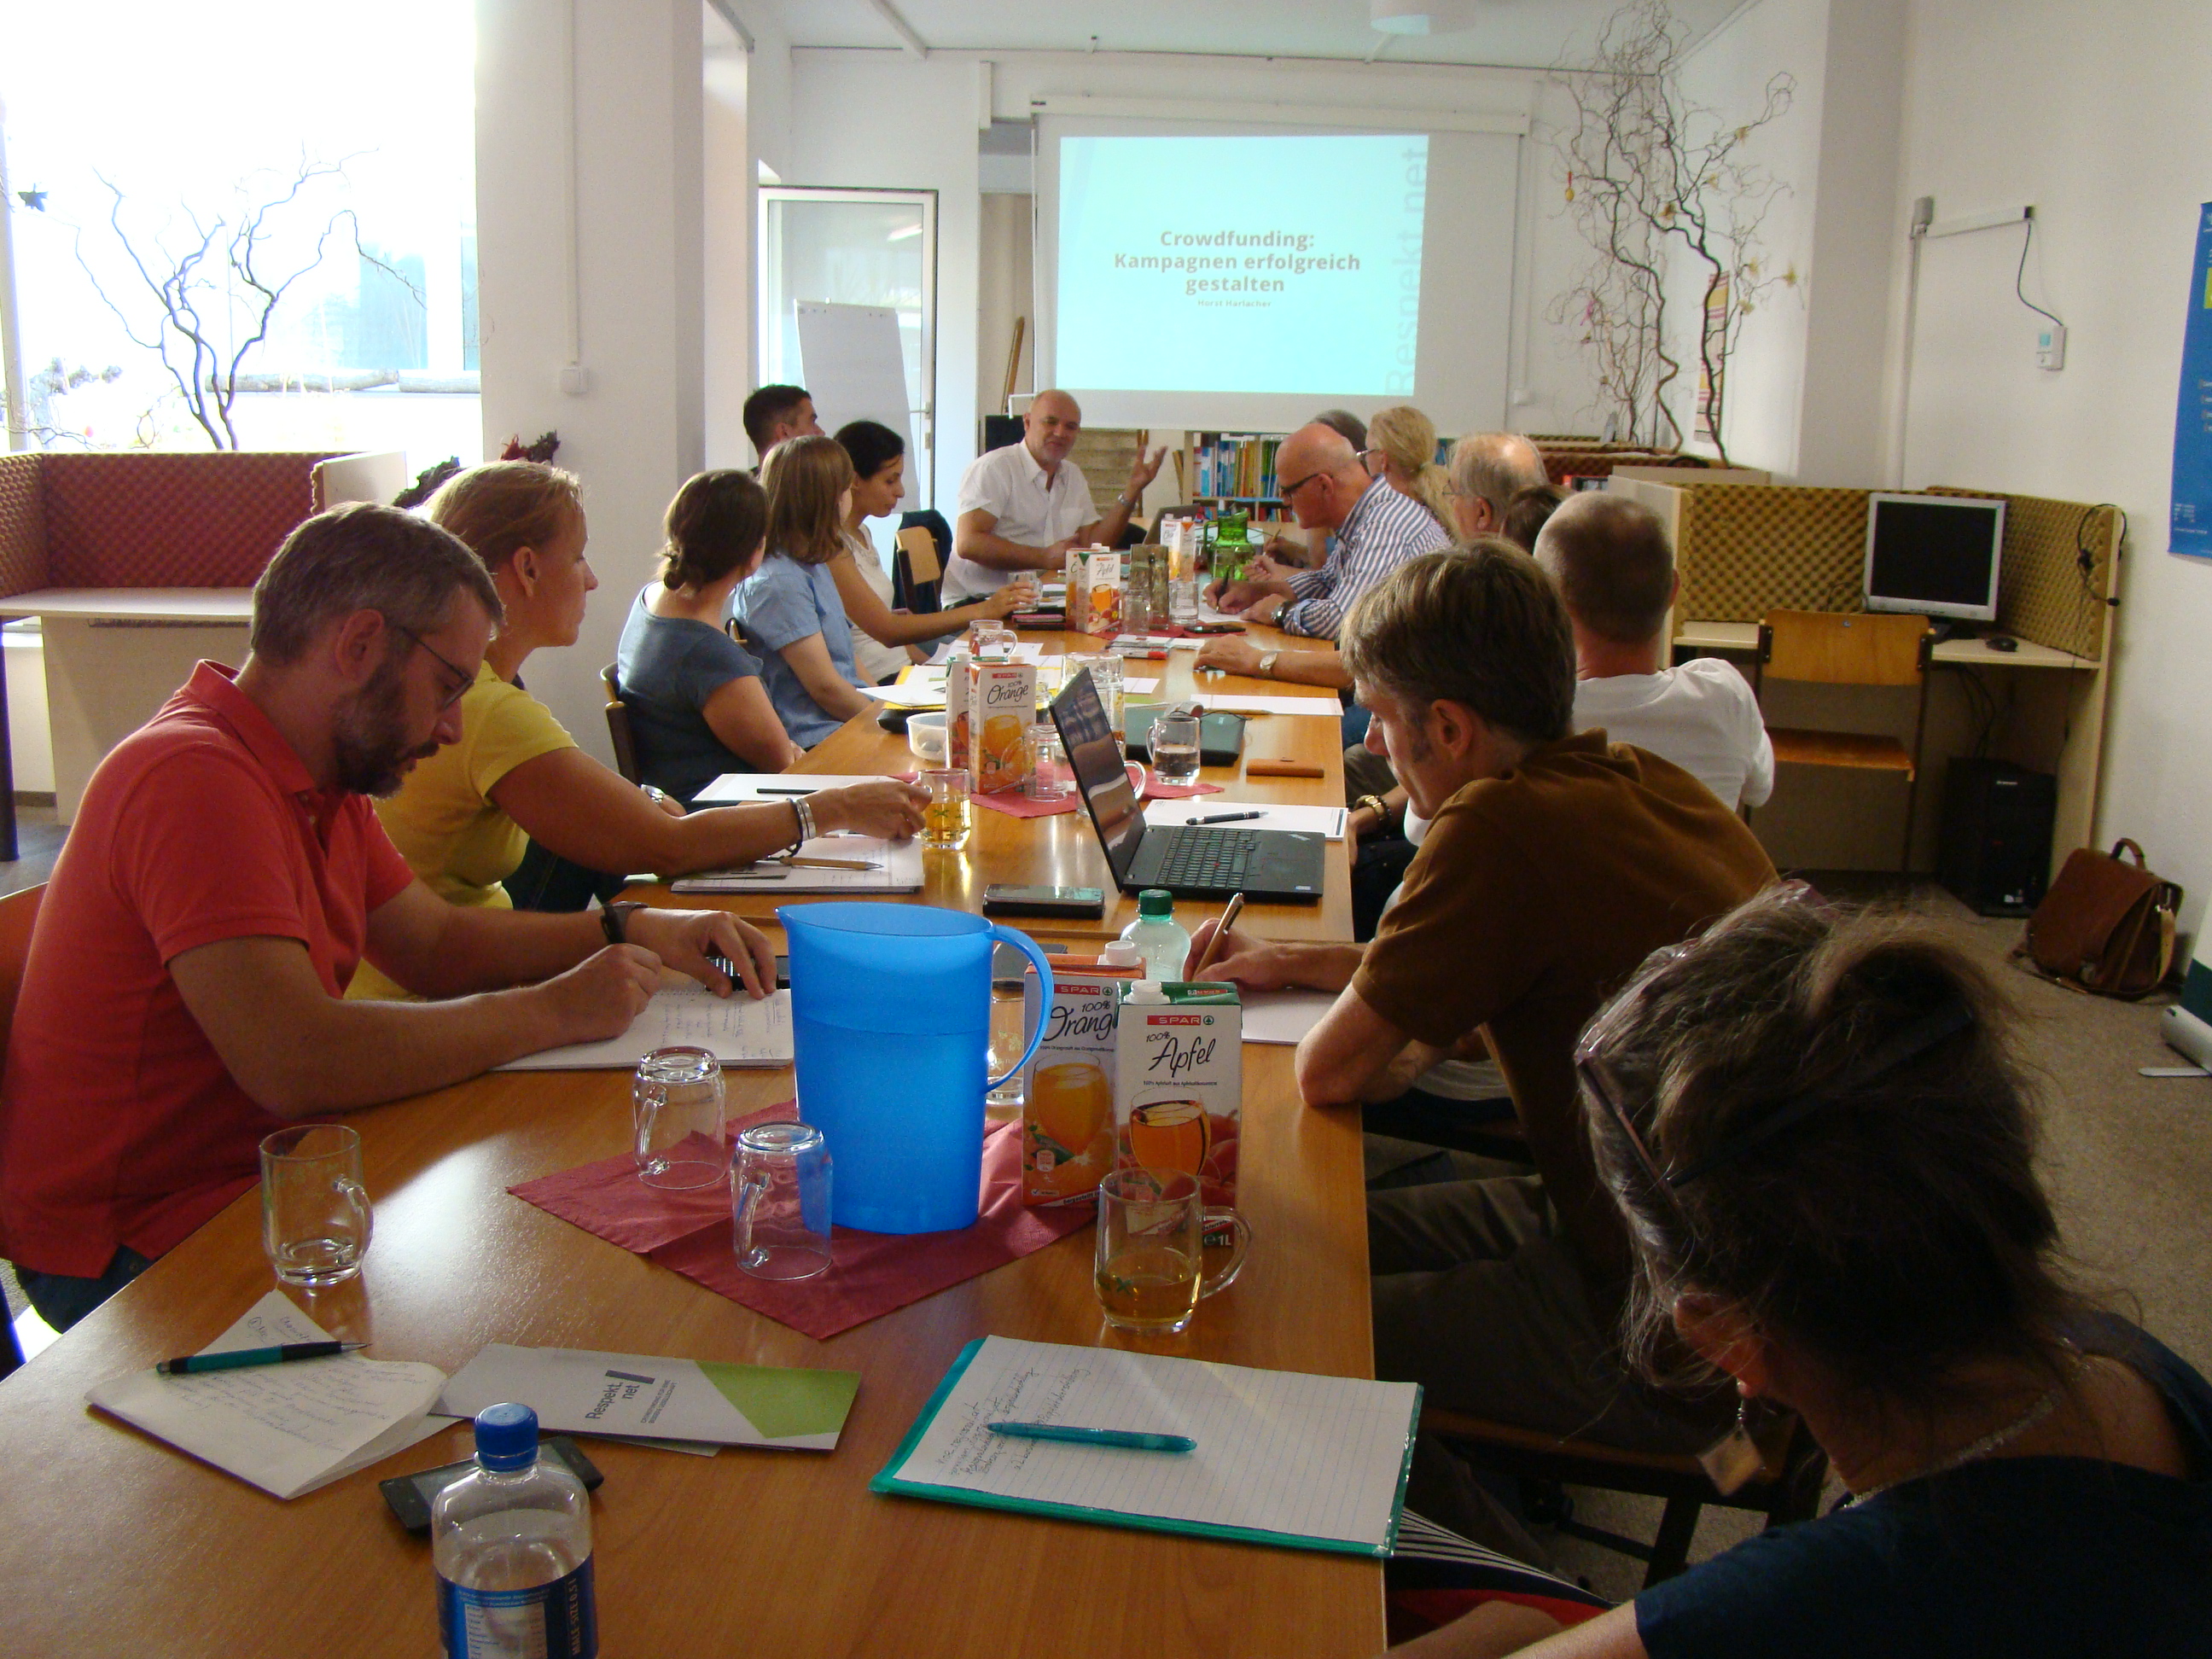 Training participants in Hollabrunn, Austria